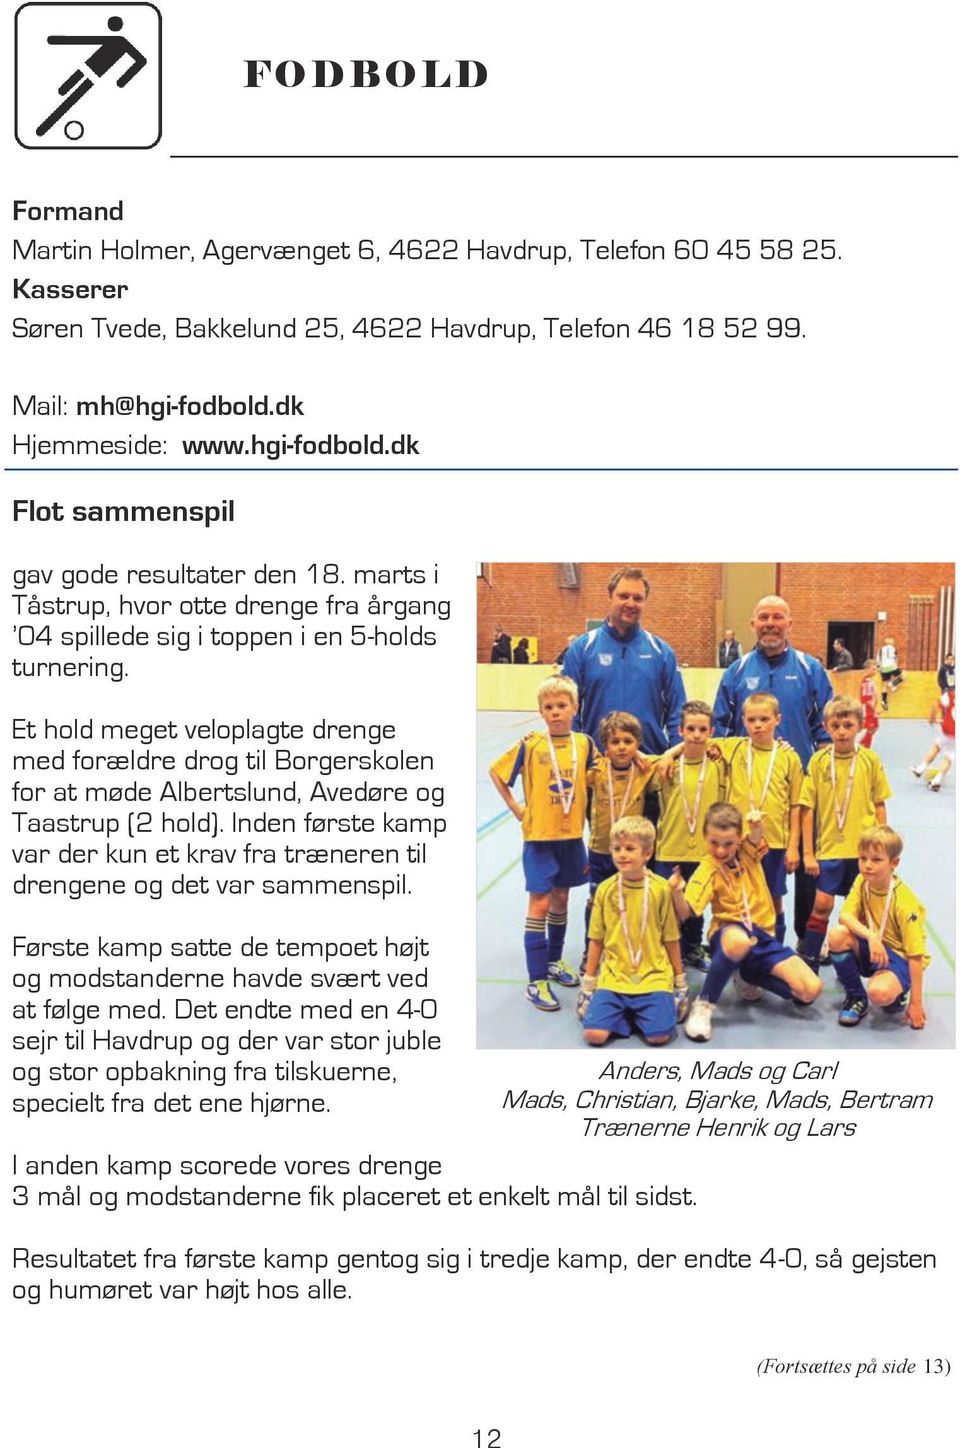 Et hold meget veloplagte drenge med forældre drog til Borgerskolen for at møde Albertslund, Avedøre og Taastrup (2 hold).